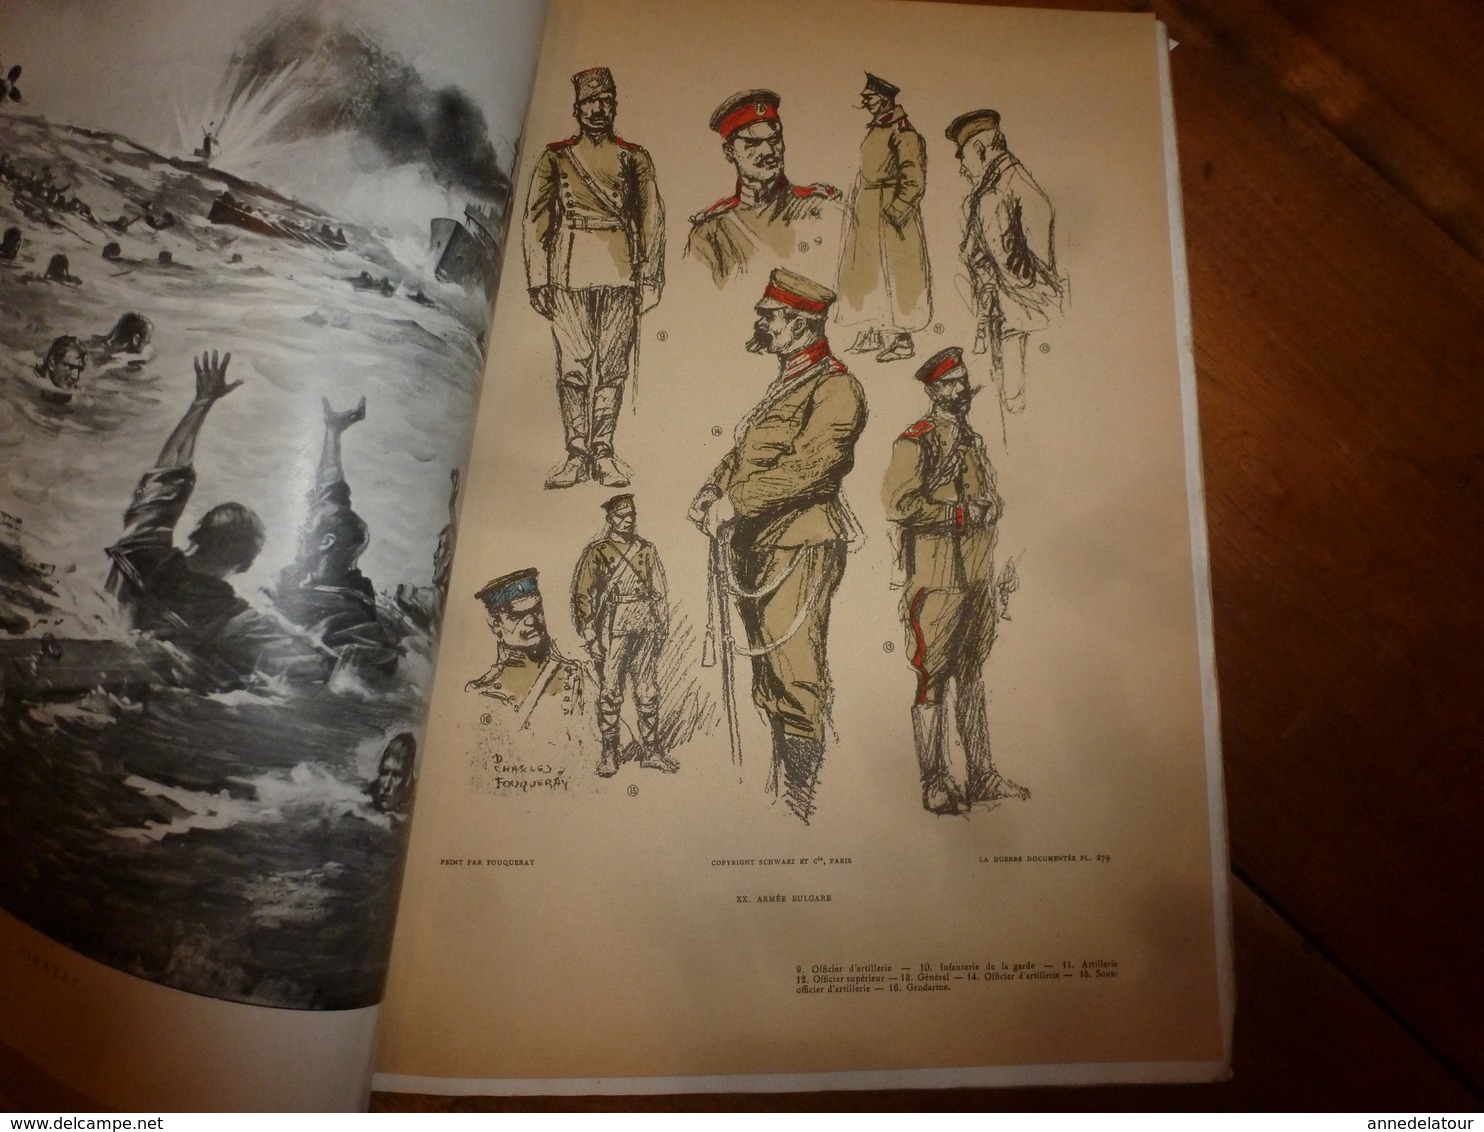 1914-1918  N° 30 LA GUERRE DOCUMENTEE,par Lieutenant-Colonel Le Marchand  (nombreuses photographies,dessins et gravures)